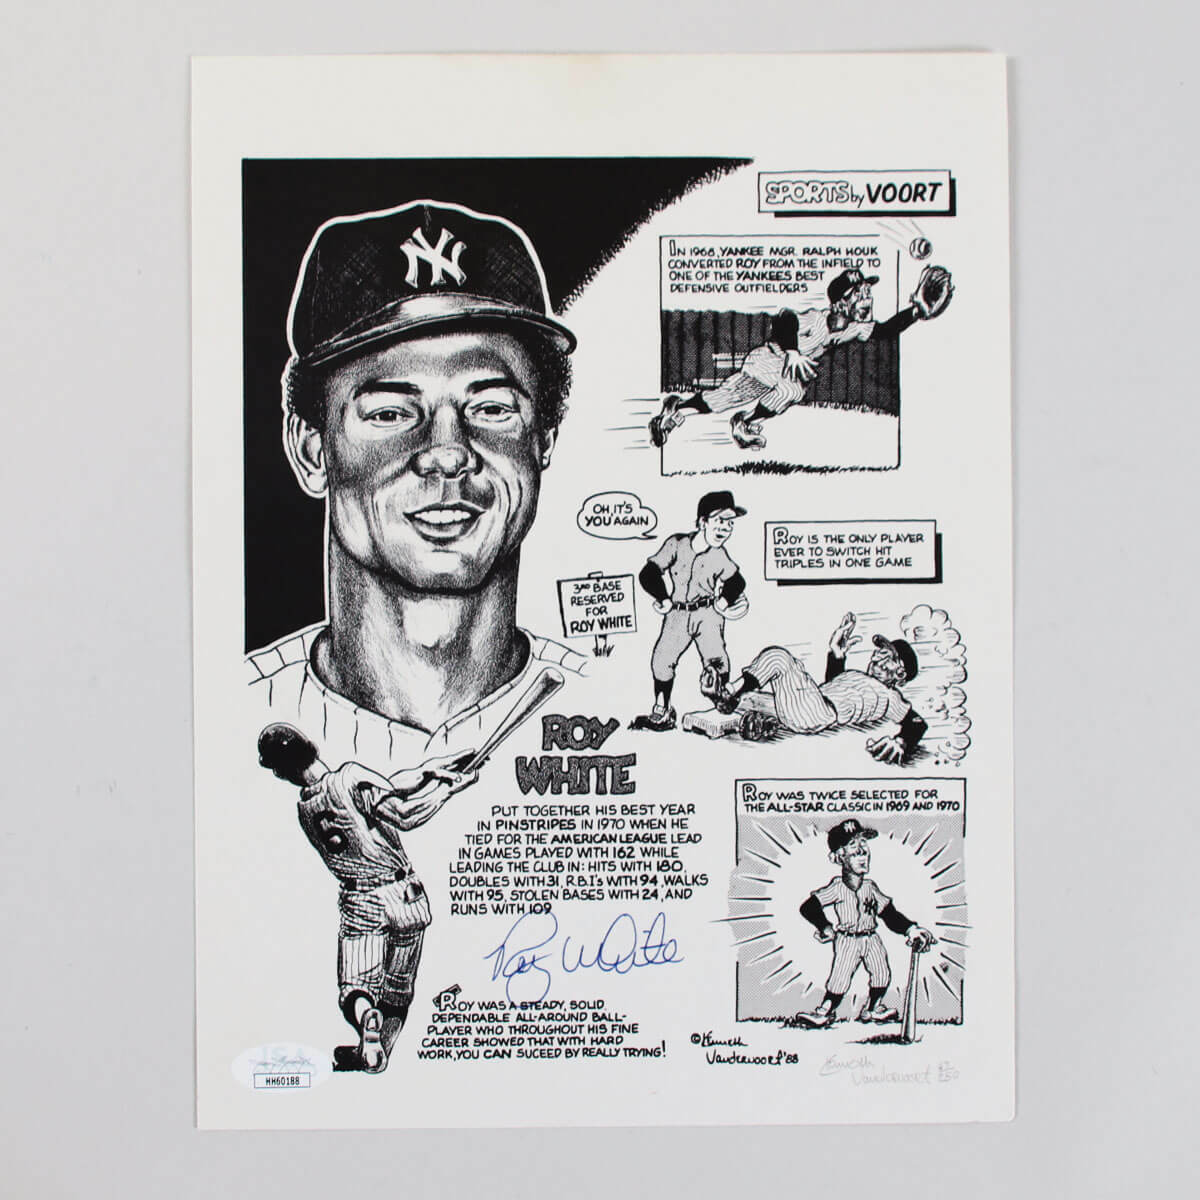 Roy White Signed Photo Poster painting 8x10 Yankees - COA JSA